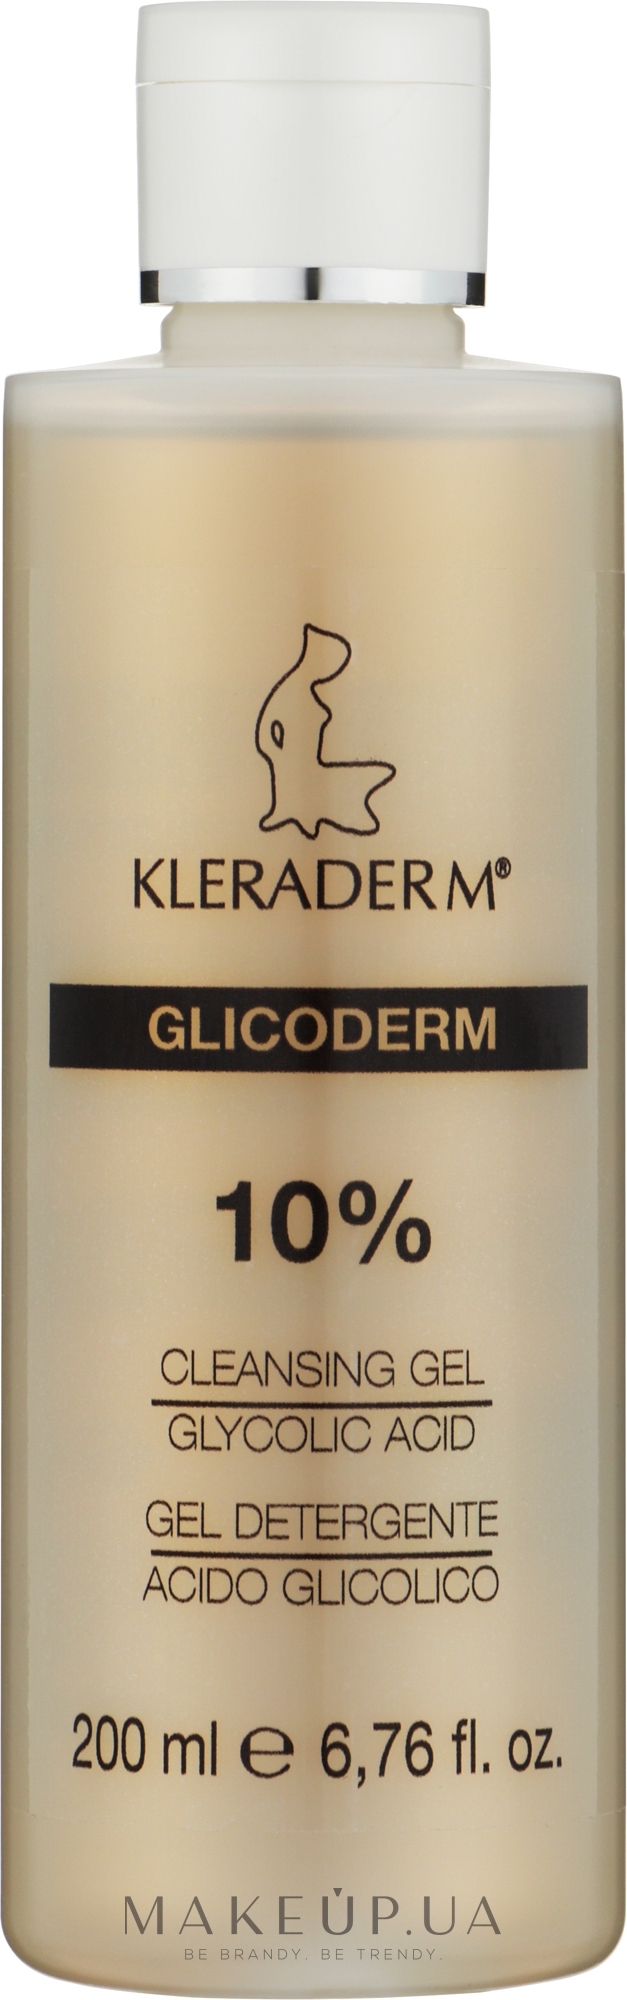 Гель очищающий с 10% гликолиевой кислотой для лица и тела - Kleraderm Glicoderm Cleansing Gel Glycolic Acid — фото 200ml